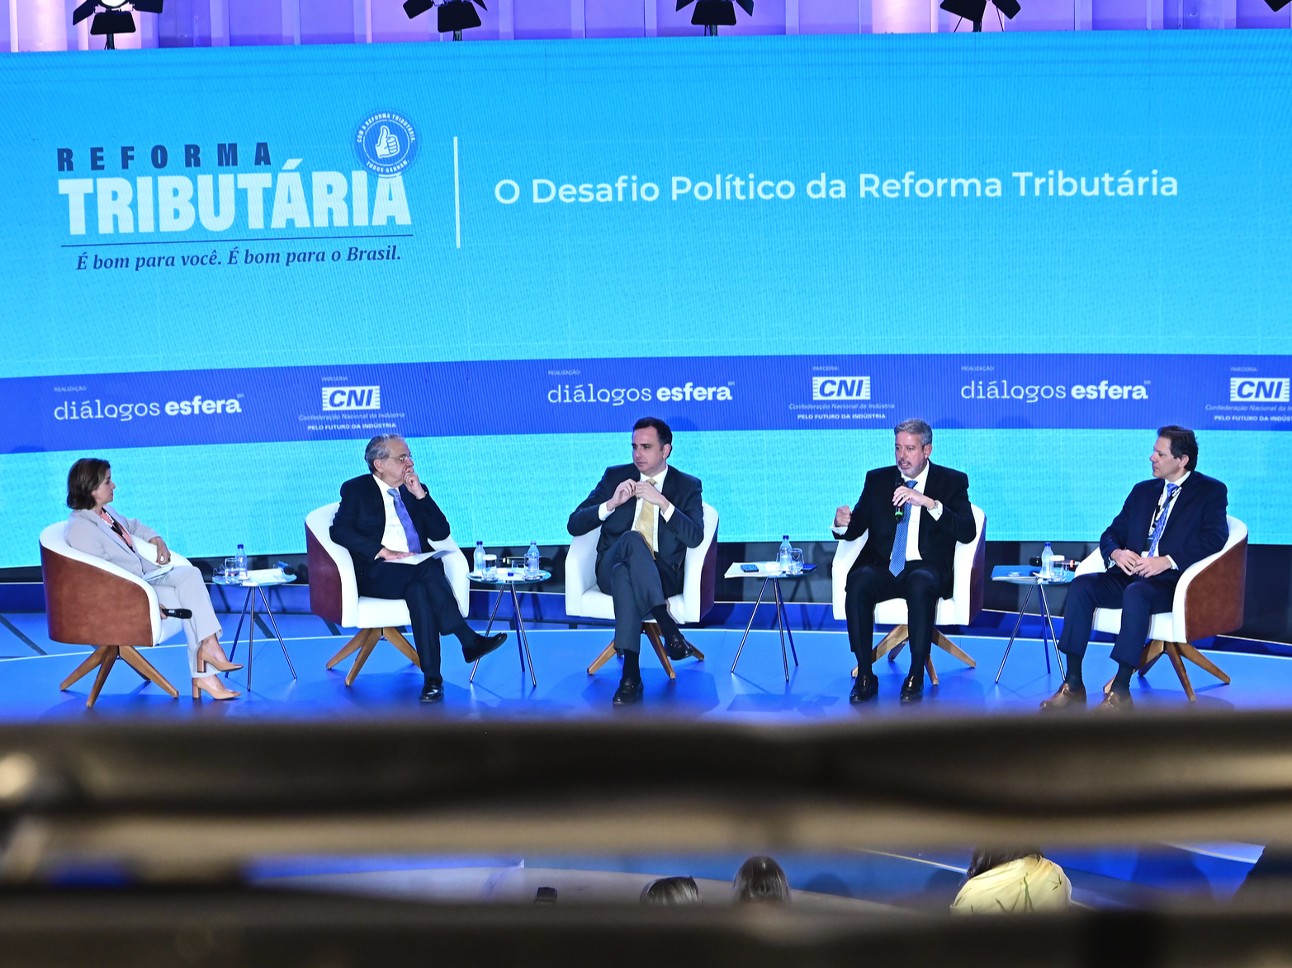 Seminário Desafios da Política Externa Brasileira - Brasília